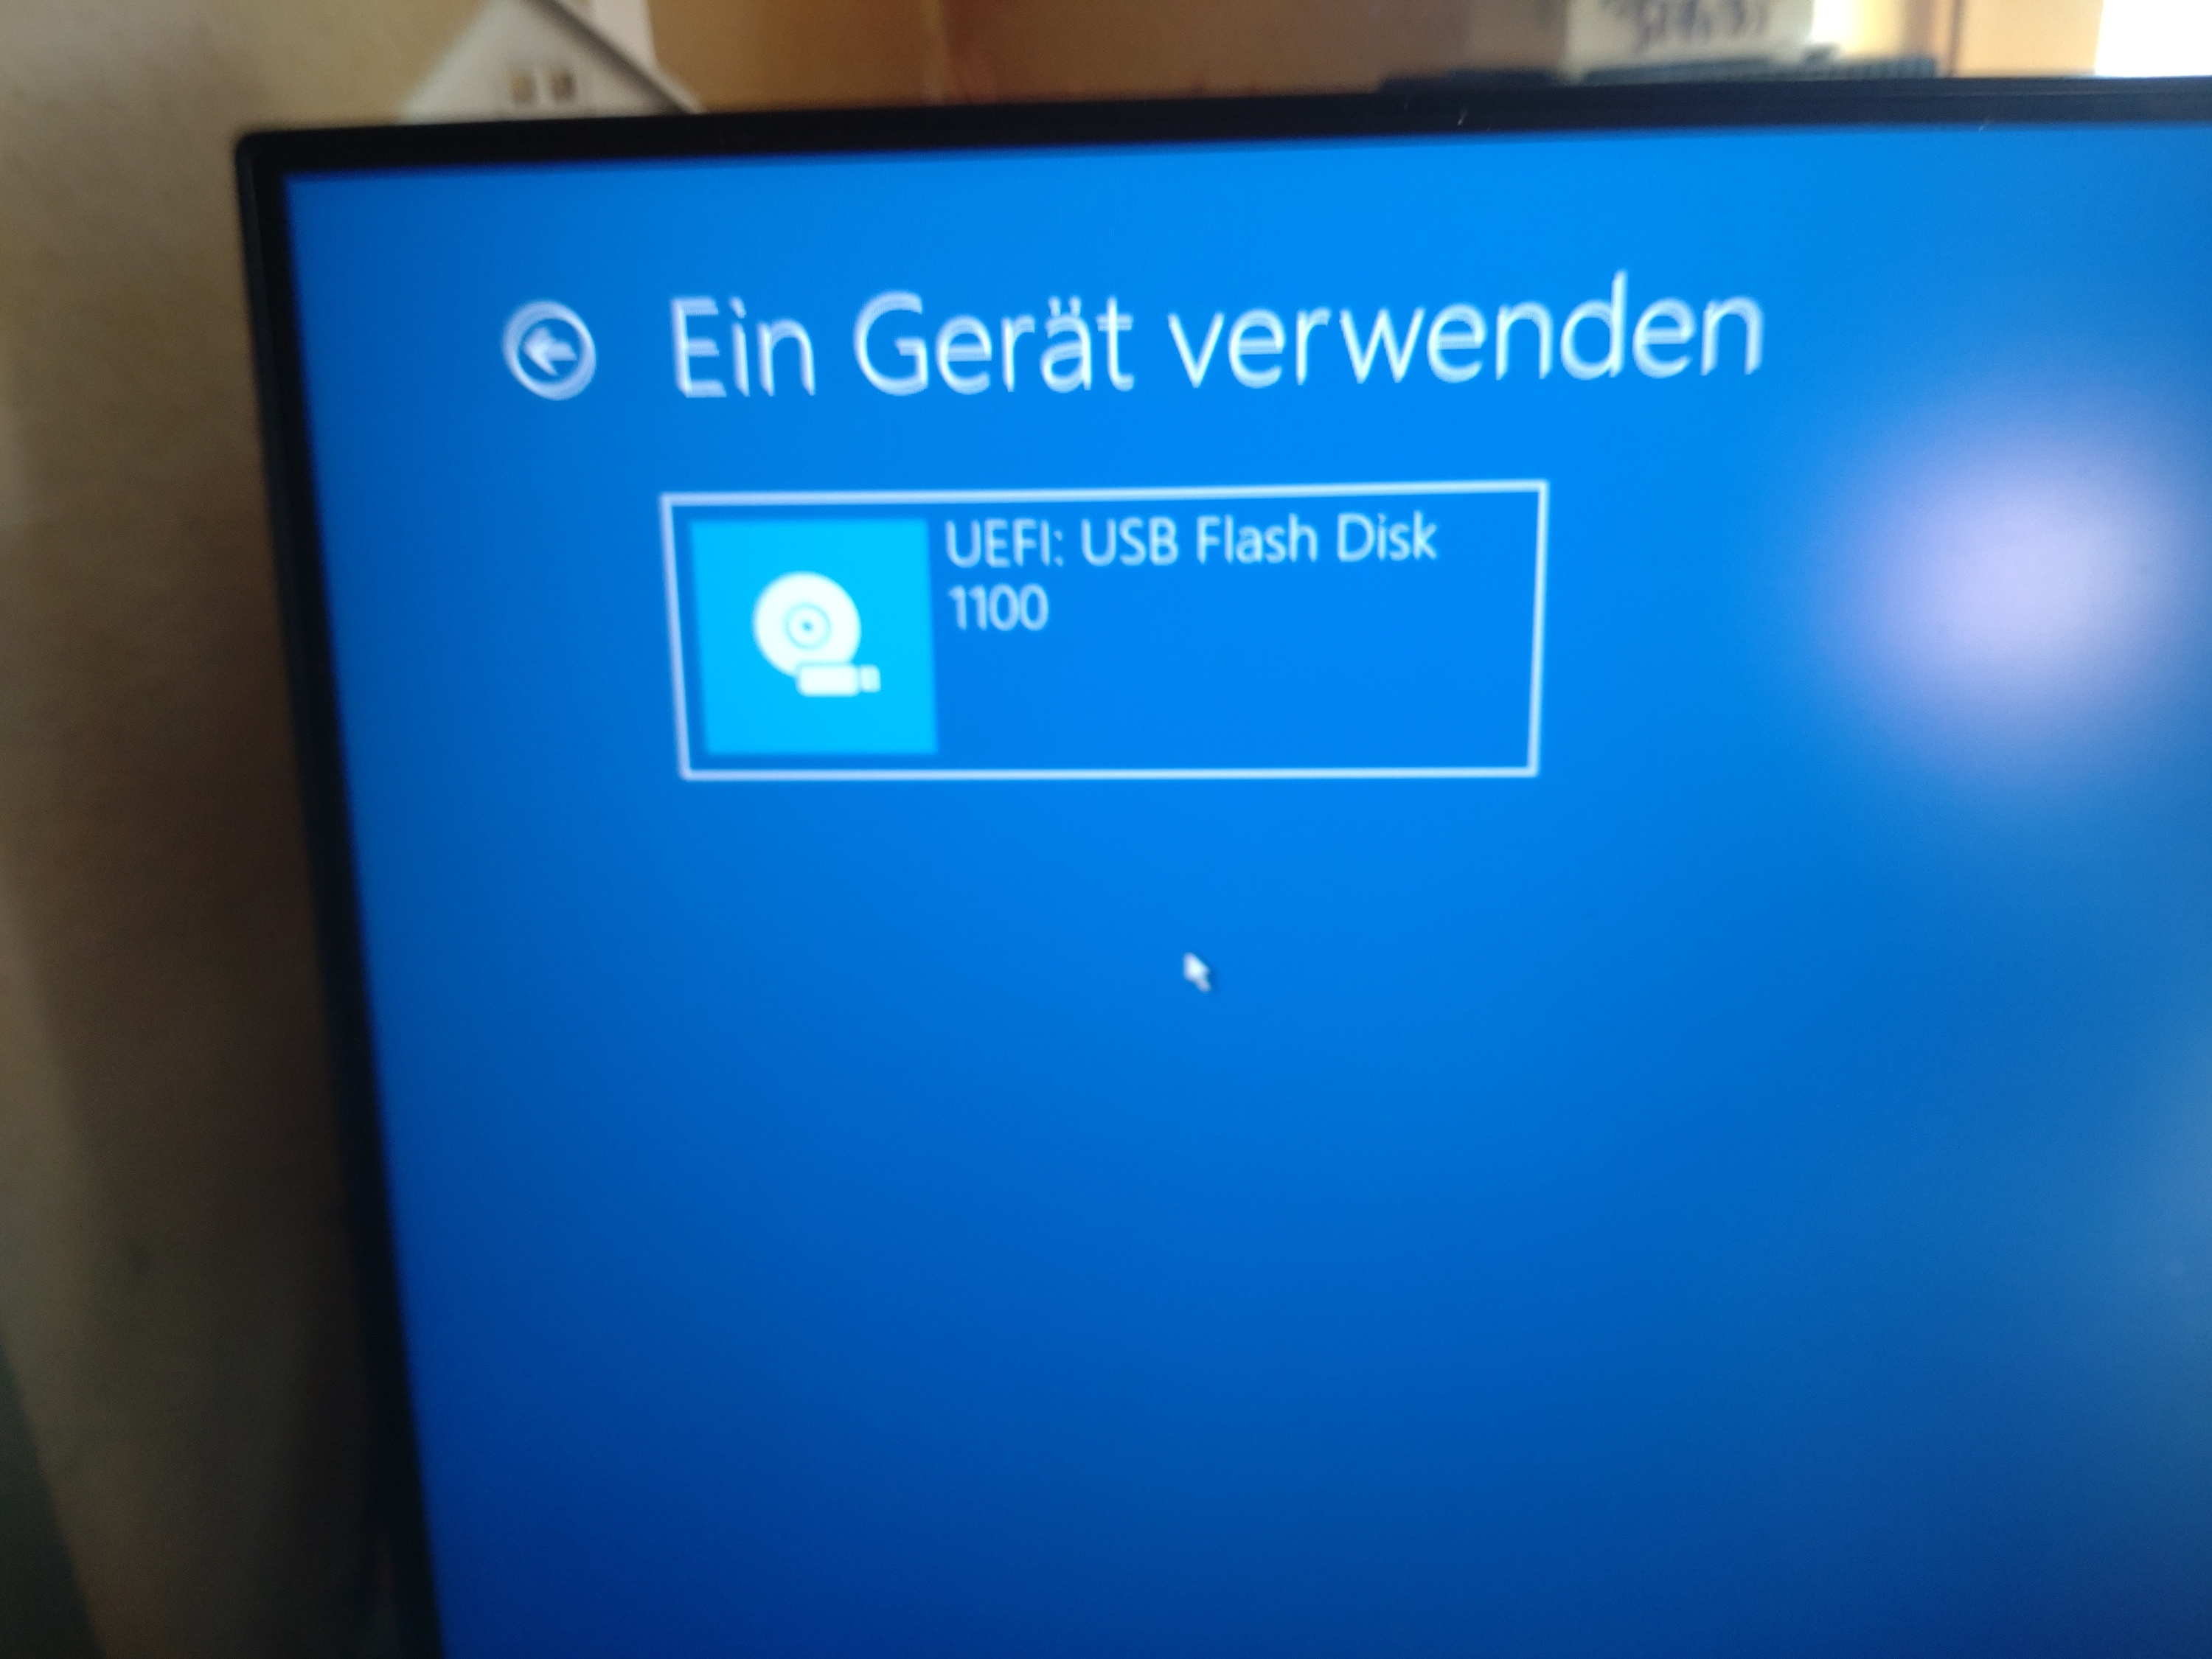 Hilfe zu Windows Update in Windows